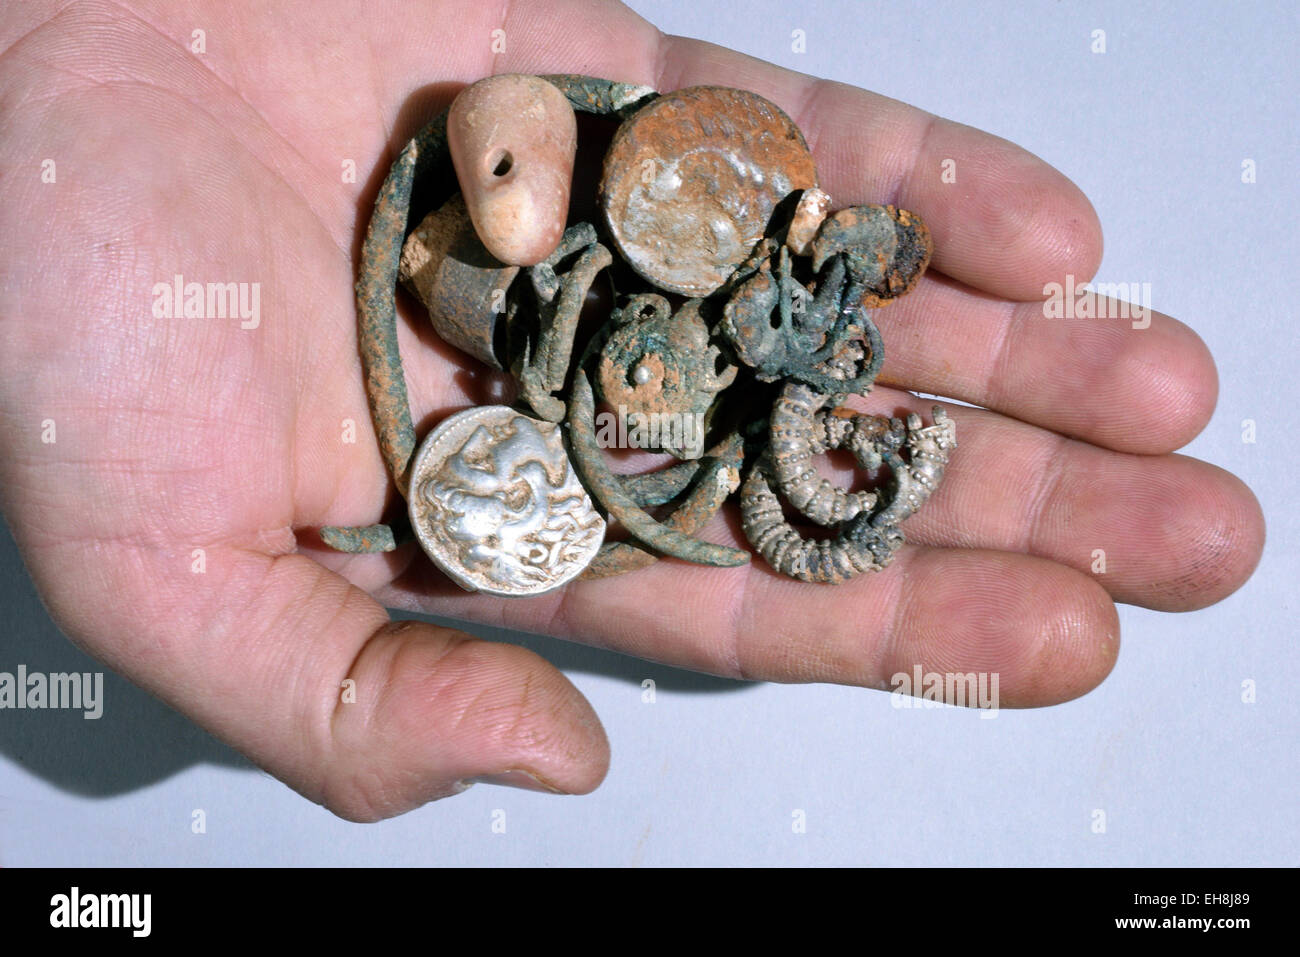 (150309) -- Jérusalem, 9 mars 2015 (Xinhua) -- photo non datée publiée par Israel Antiquities Authority montre la cache d'objets en argent trouvés dans le nord d'Israël : deux pièces d'Alexandre de Macédoine, trois, quatre Bagues Bracelets Boucles d'oreilles décorées, deux, trois boucles d'autres (probablement en argent) et une petite pierre de poids. Les pièces rares et des bijoux de l'époque d'Alexandre le Grand ont été trouvés par hasard dans une grotte dans le nord d'Israël, des fonctionnaires de l'Autorité des antiquités d'Israël a dit le 9 mars 2015. Les 2 300 ans, comprend les pièces d'argent cache d'Alexandre le Grand, qui conquere Banque D'Images